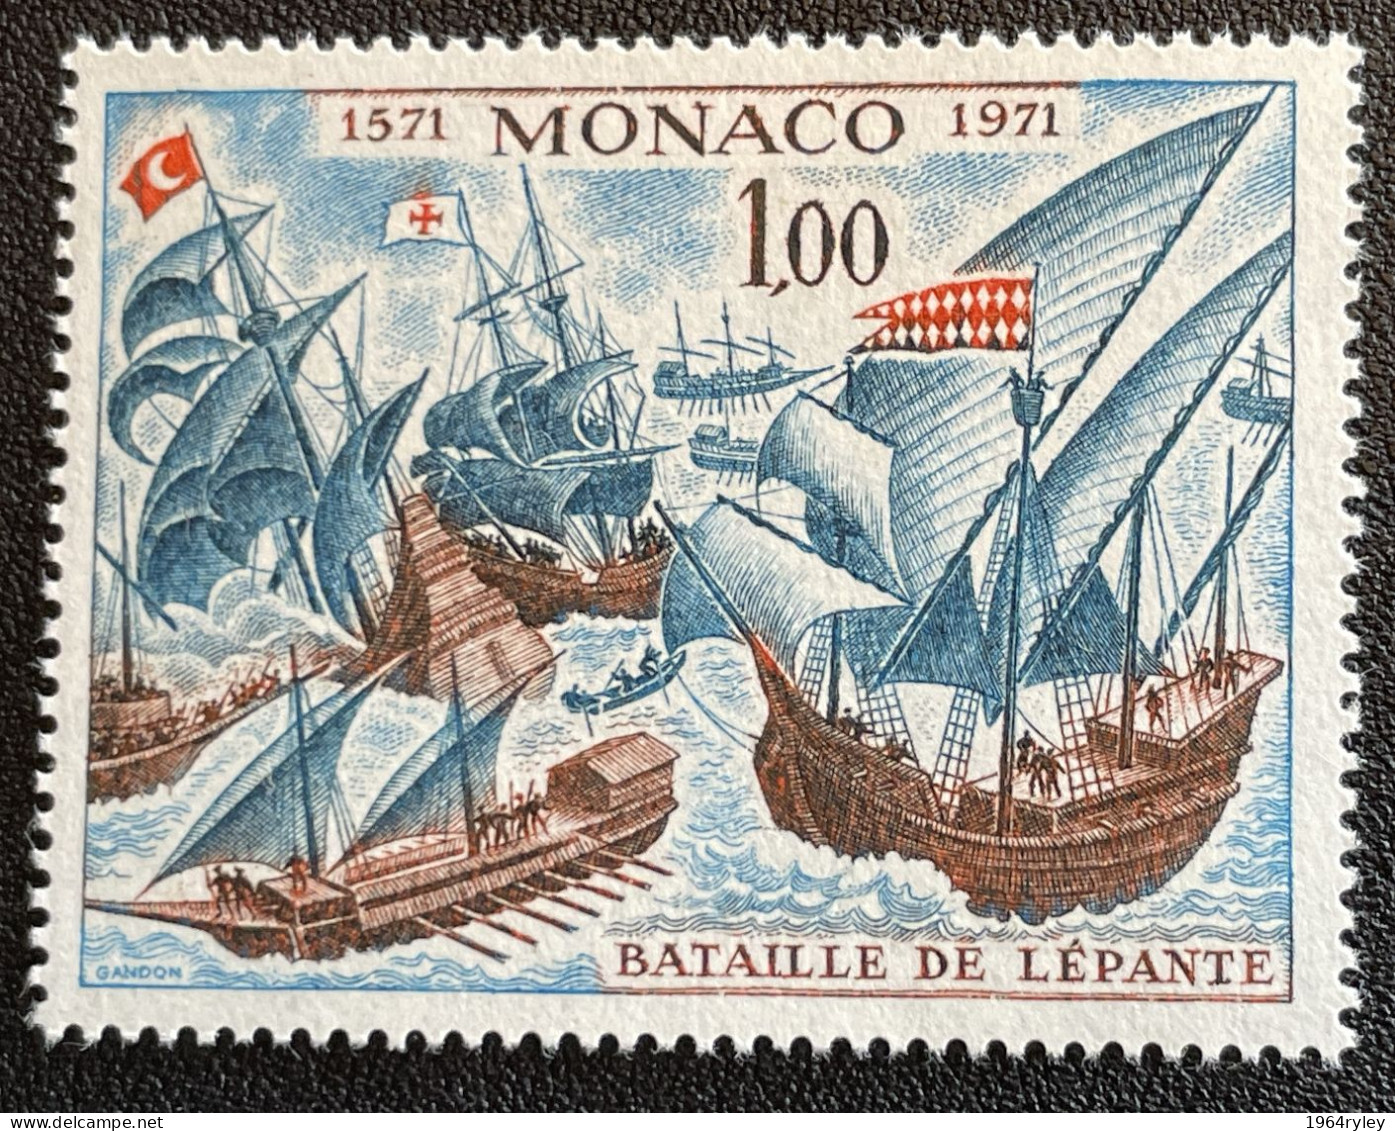 MONACO - MNH** - 1972 - # 870 - Unused Stamps